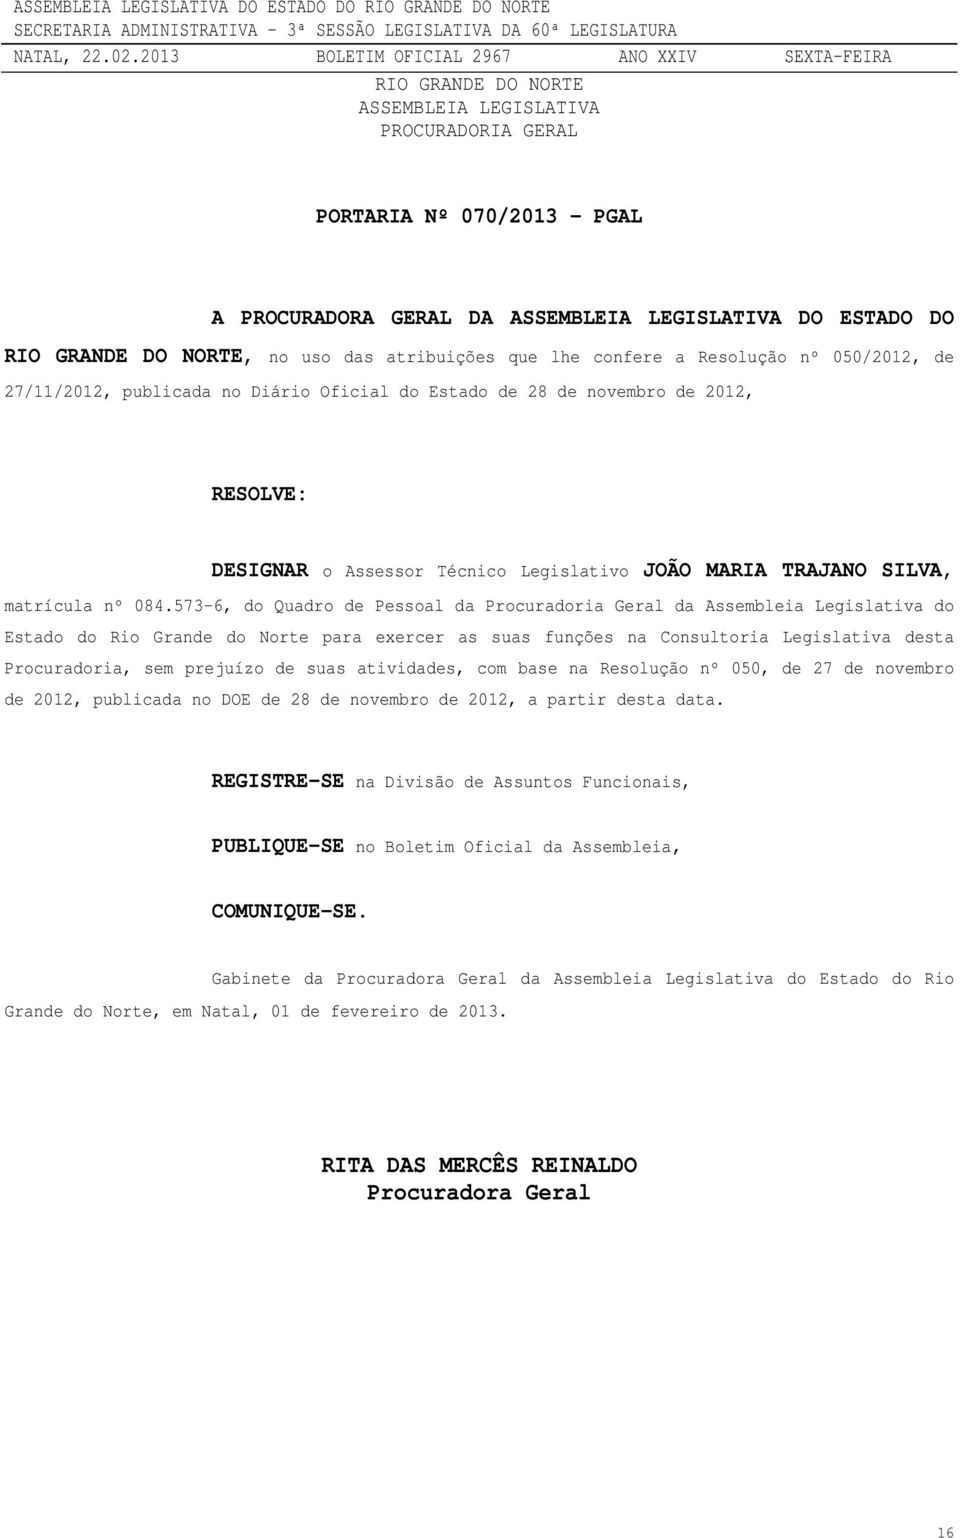 573-6, do Quadro de Pessoal da Procuradoria Geral da Assembleia Legislativa do Estado do Rio Grande do Norte para exercer as suas funções